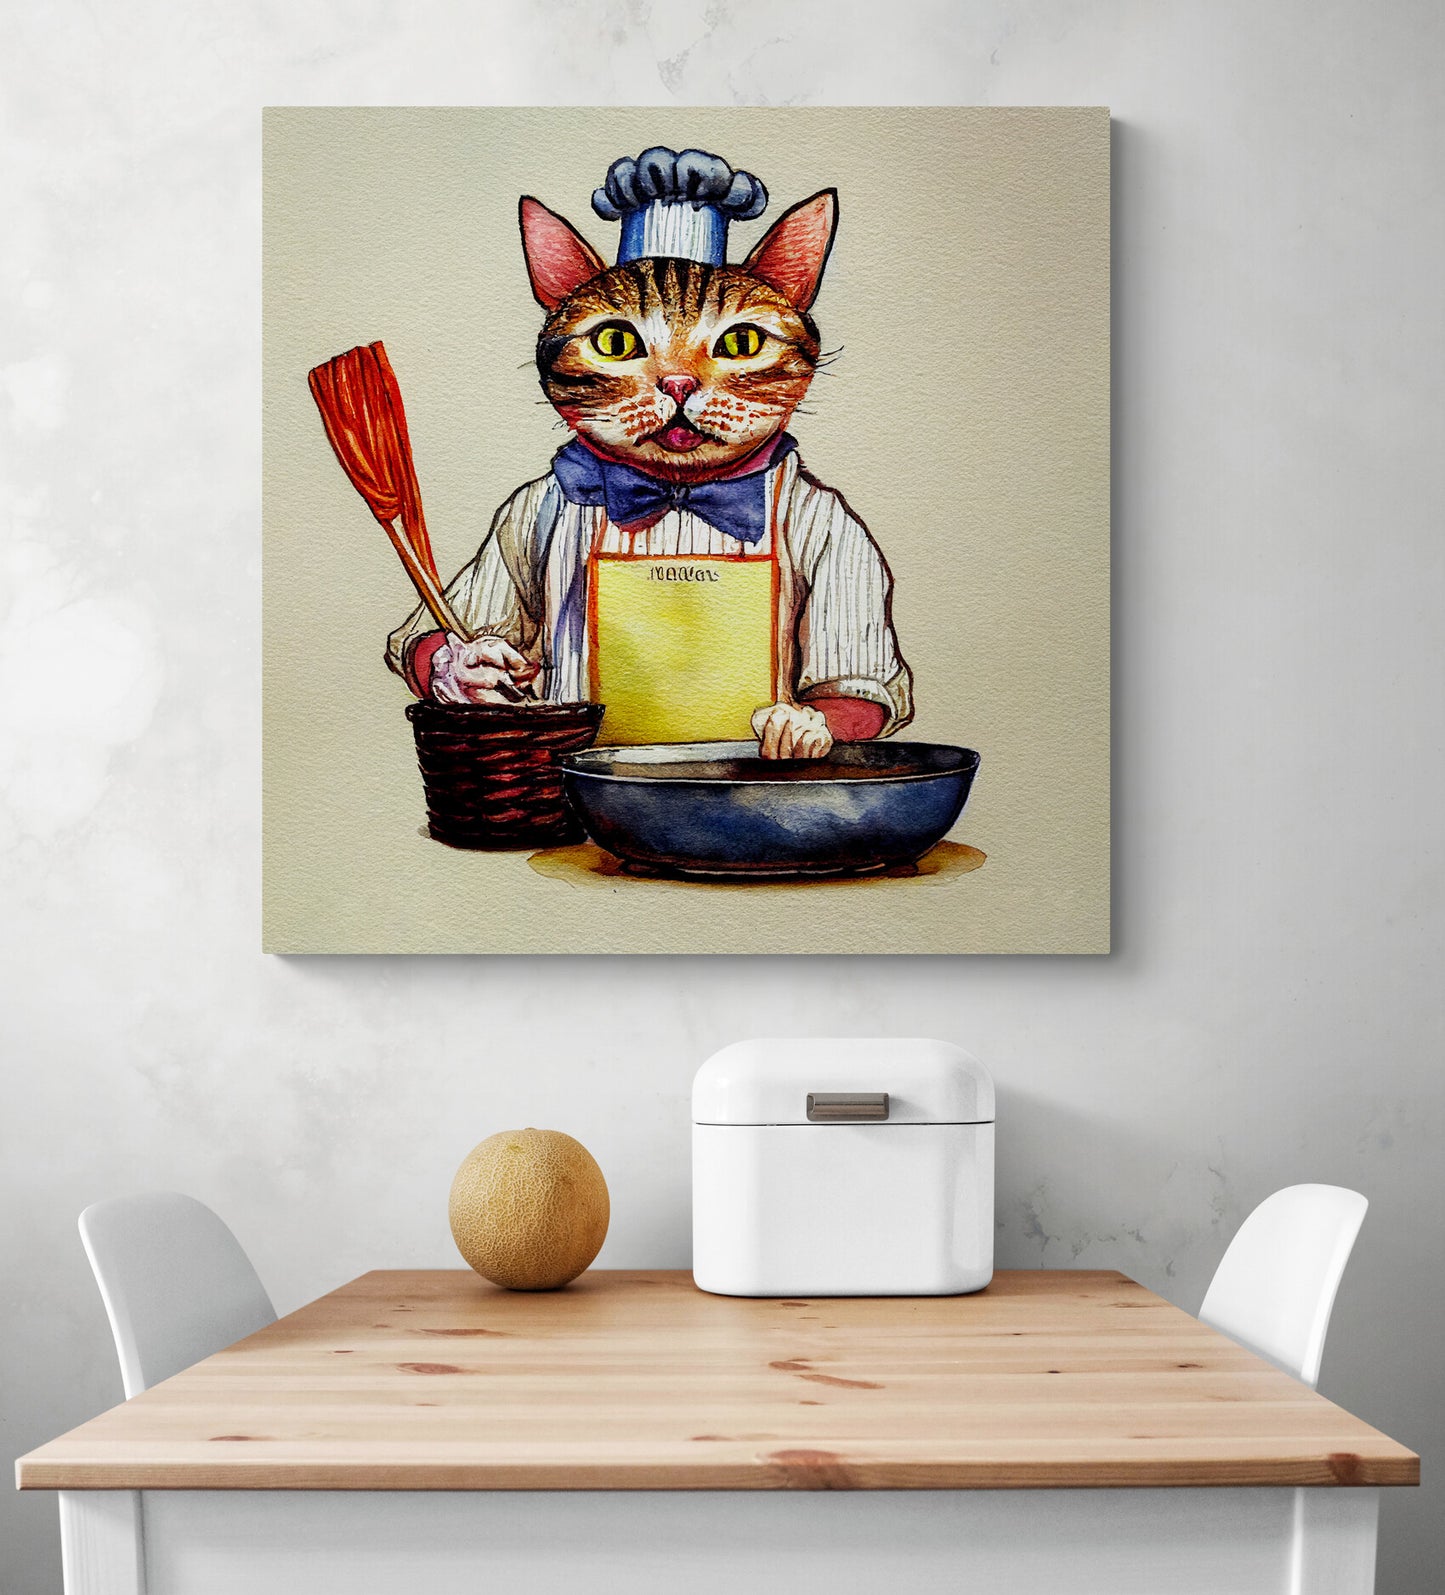 Accrochée sur le mur d'une cuisine, au-dessus d'une table en bois une toile en polyester est accrochée sur le mur, il y a une illustration d'un chat qui se tient de face prêt à cuisiner. L'objet de décoration est plutôt original et le chat mignon il porte une tenue de cuisinier avec une toque, il tient dans ça main une spatule. Une corbeille à pain en métal blanc et un melon sont posés sur le dessus d'une table en bois.